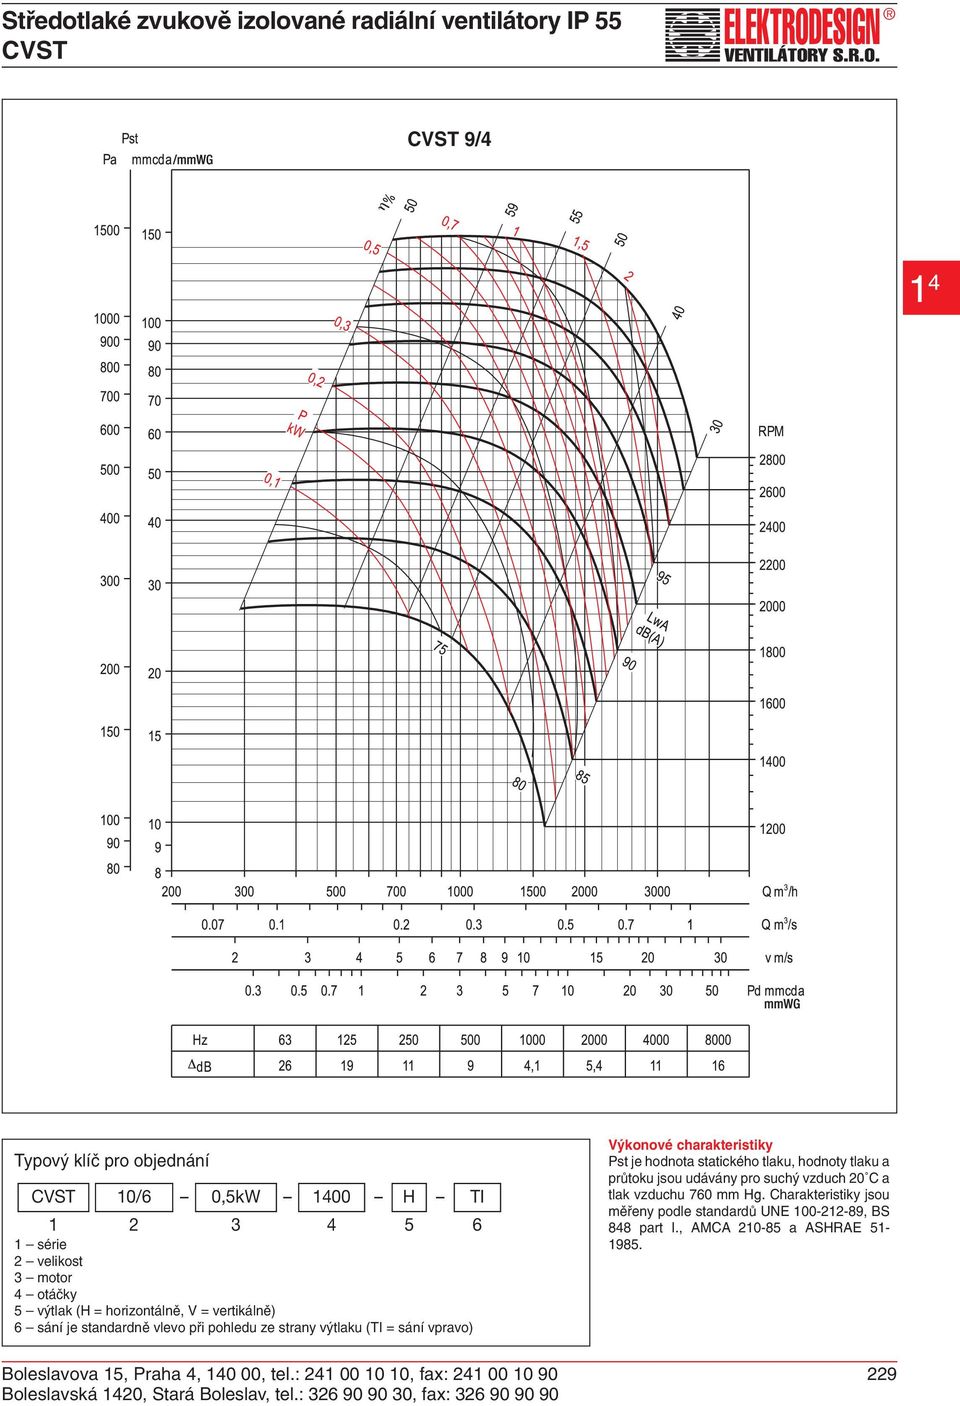 suchý vzduch 20 C a tlak vzduchu 760 mm Hg. Charakteristiky jsou měřeny podle standardů UNE 100-212-89, BS 848 part I.